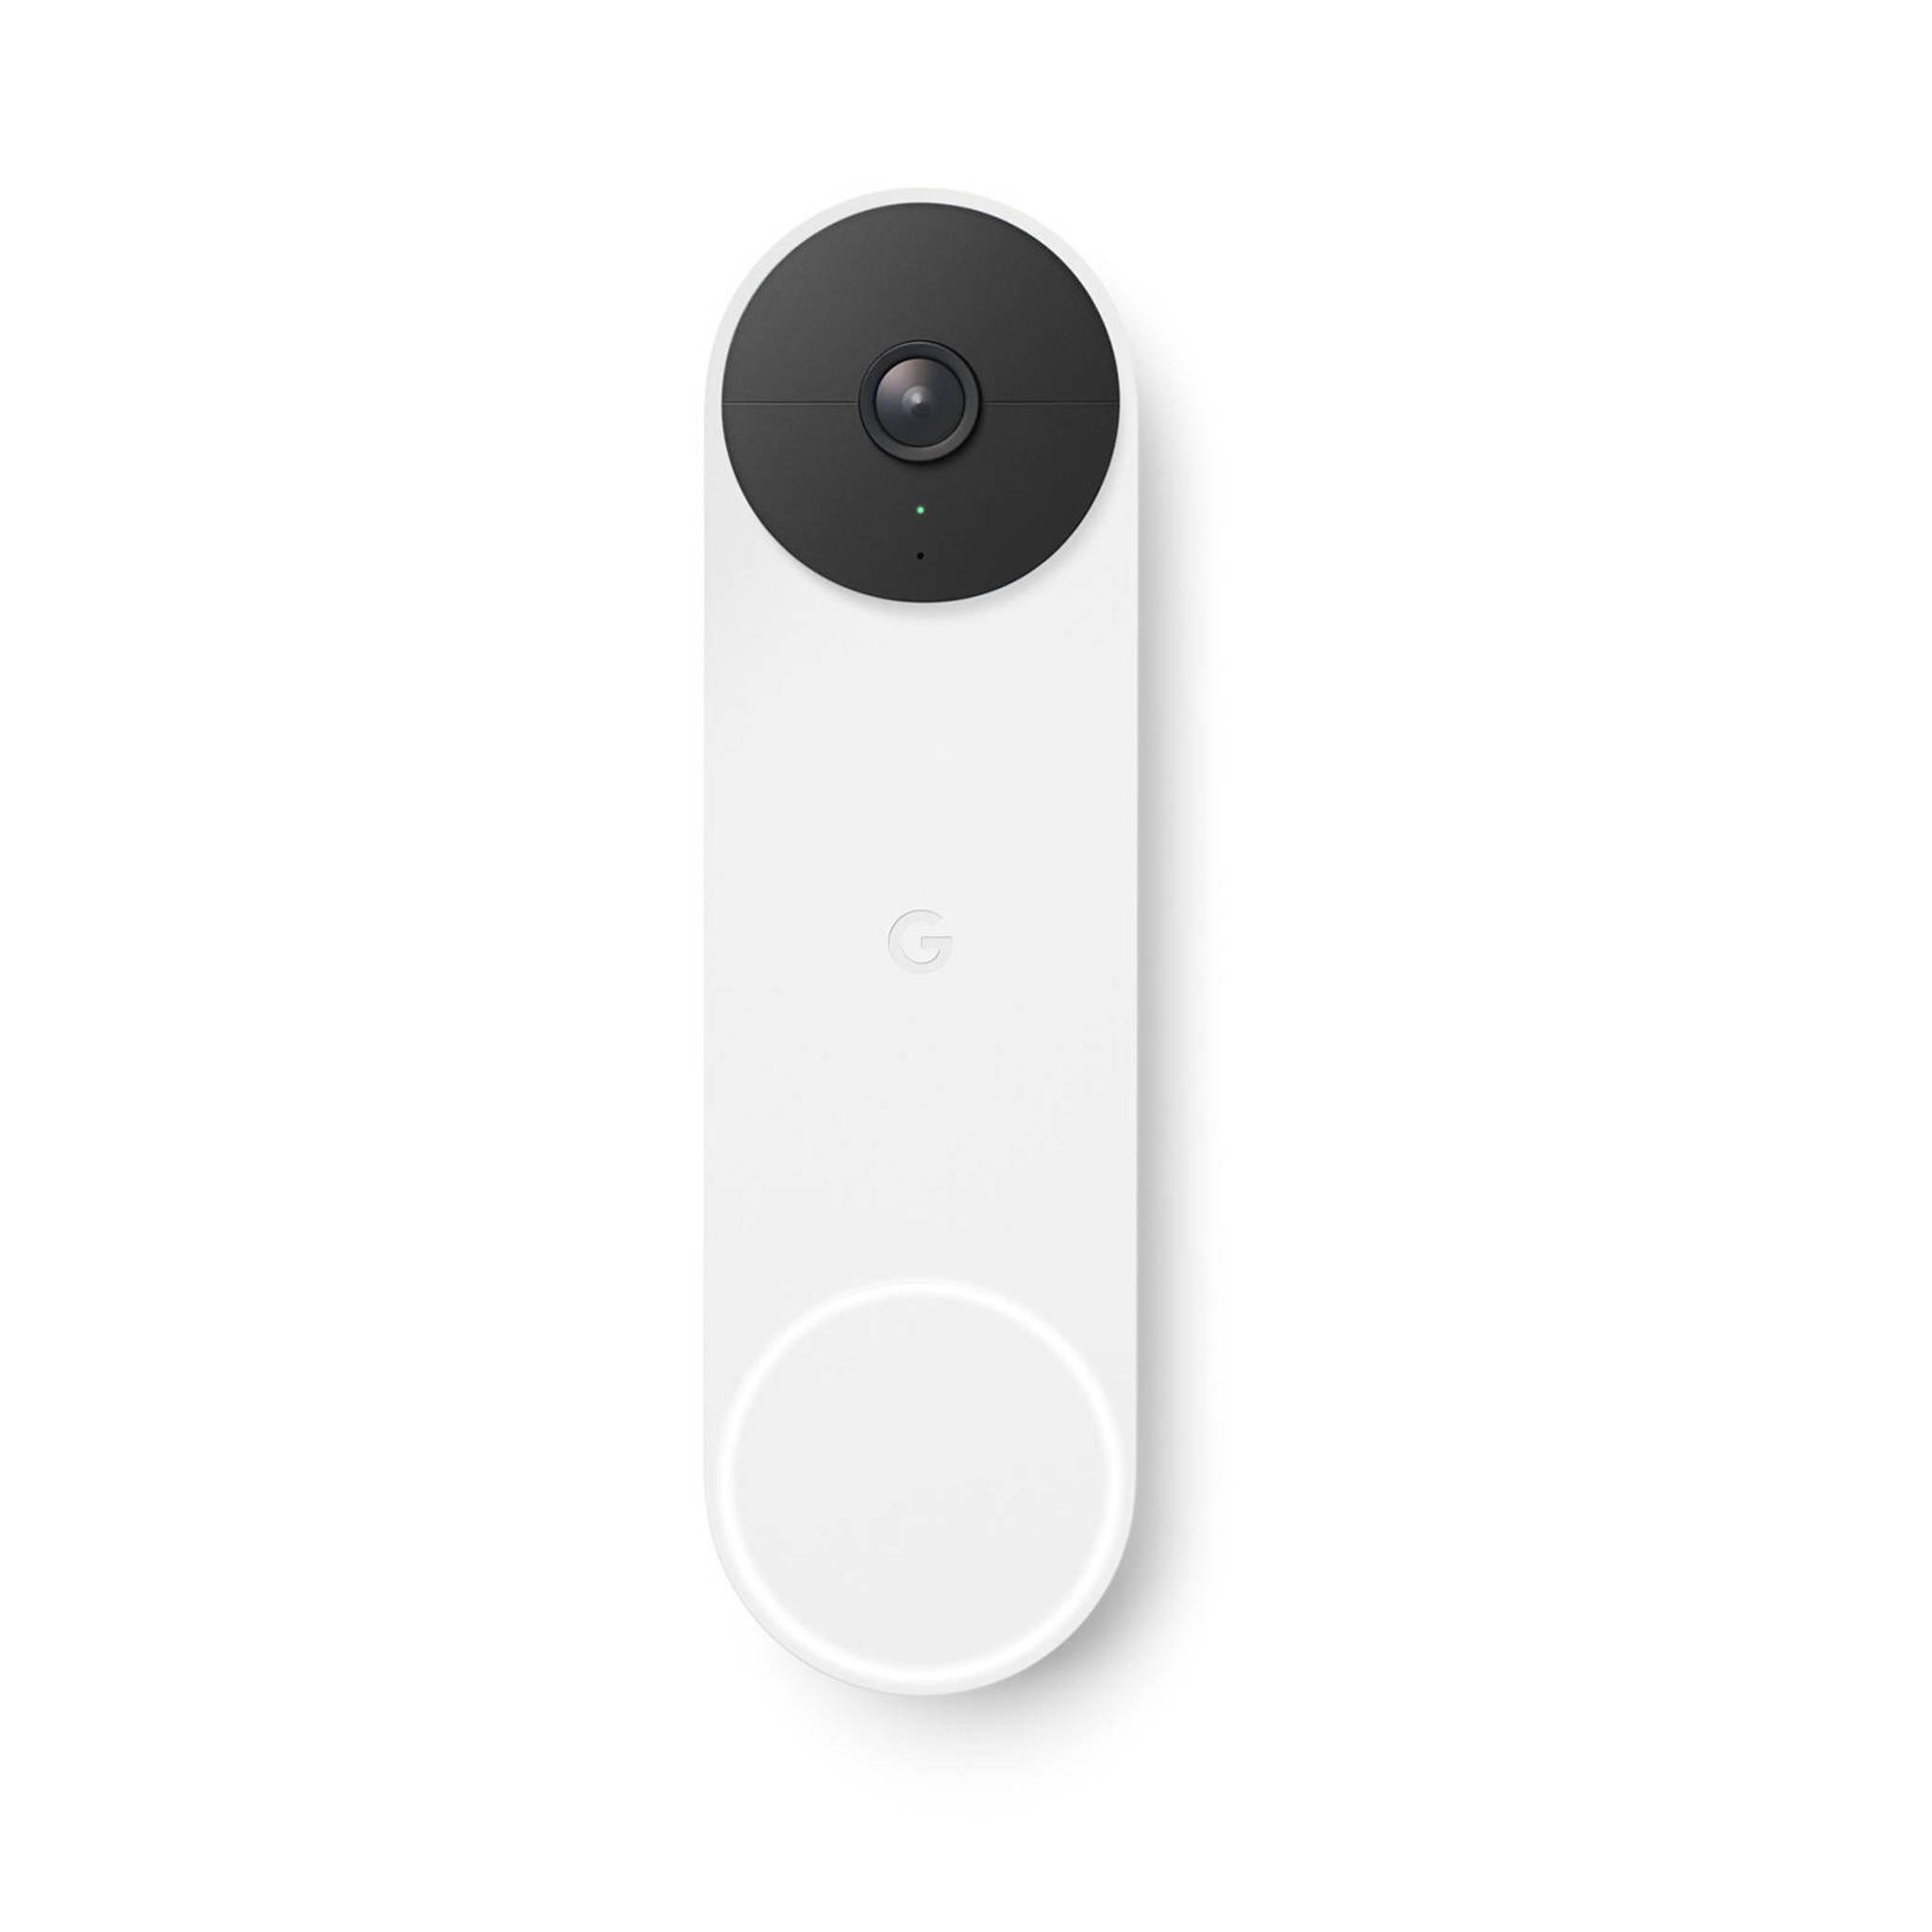 Foto : Review - Google Nest Doorbell